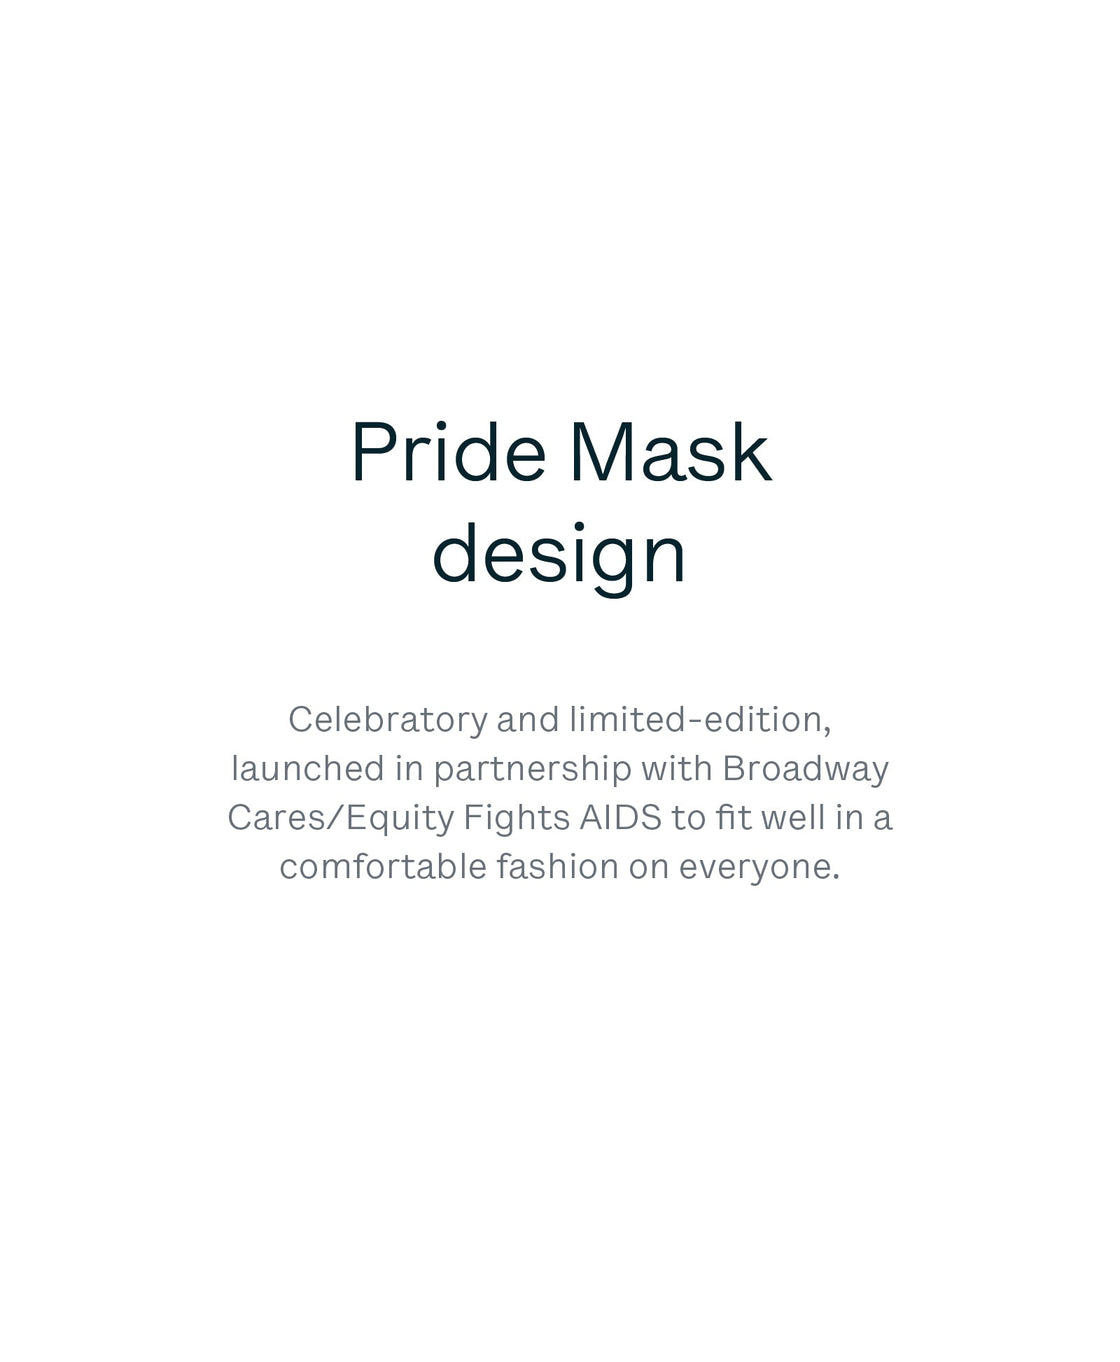 4 Pride Masks